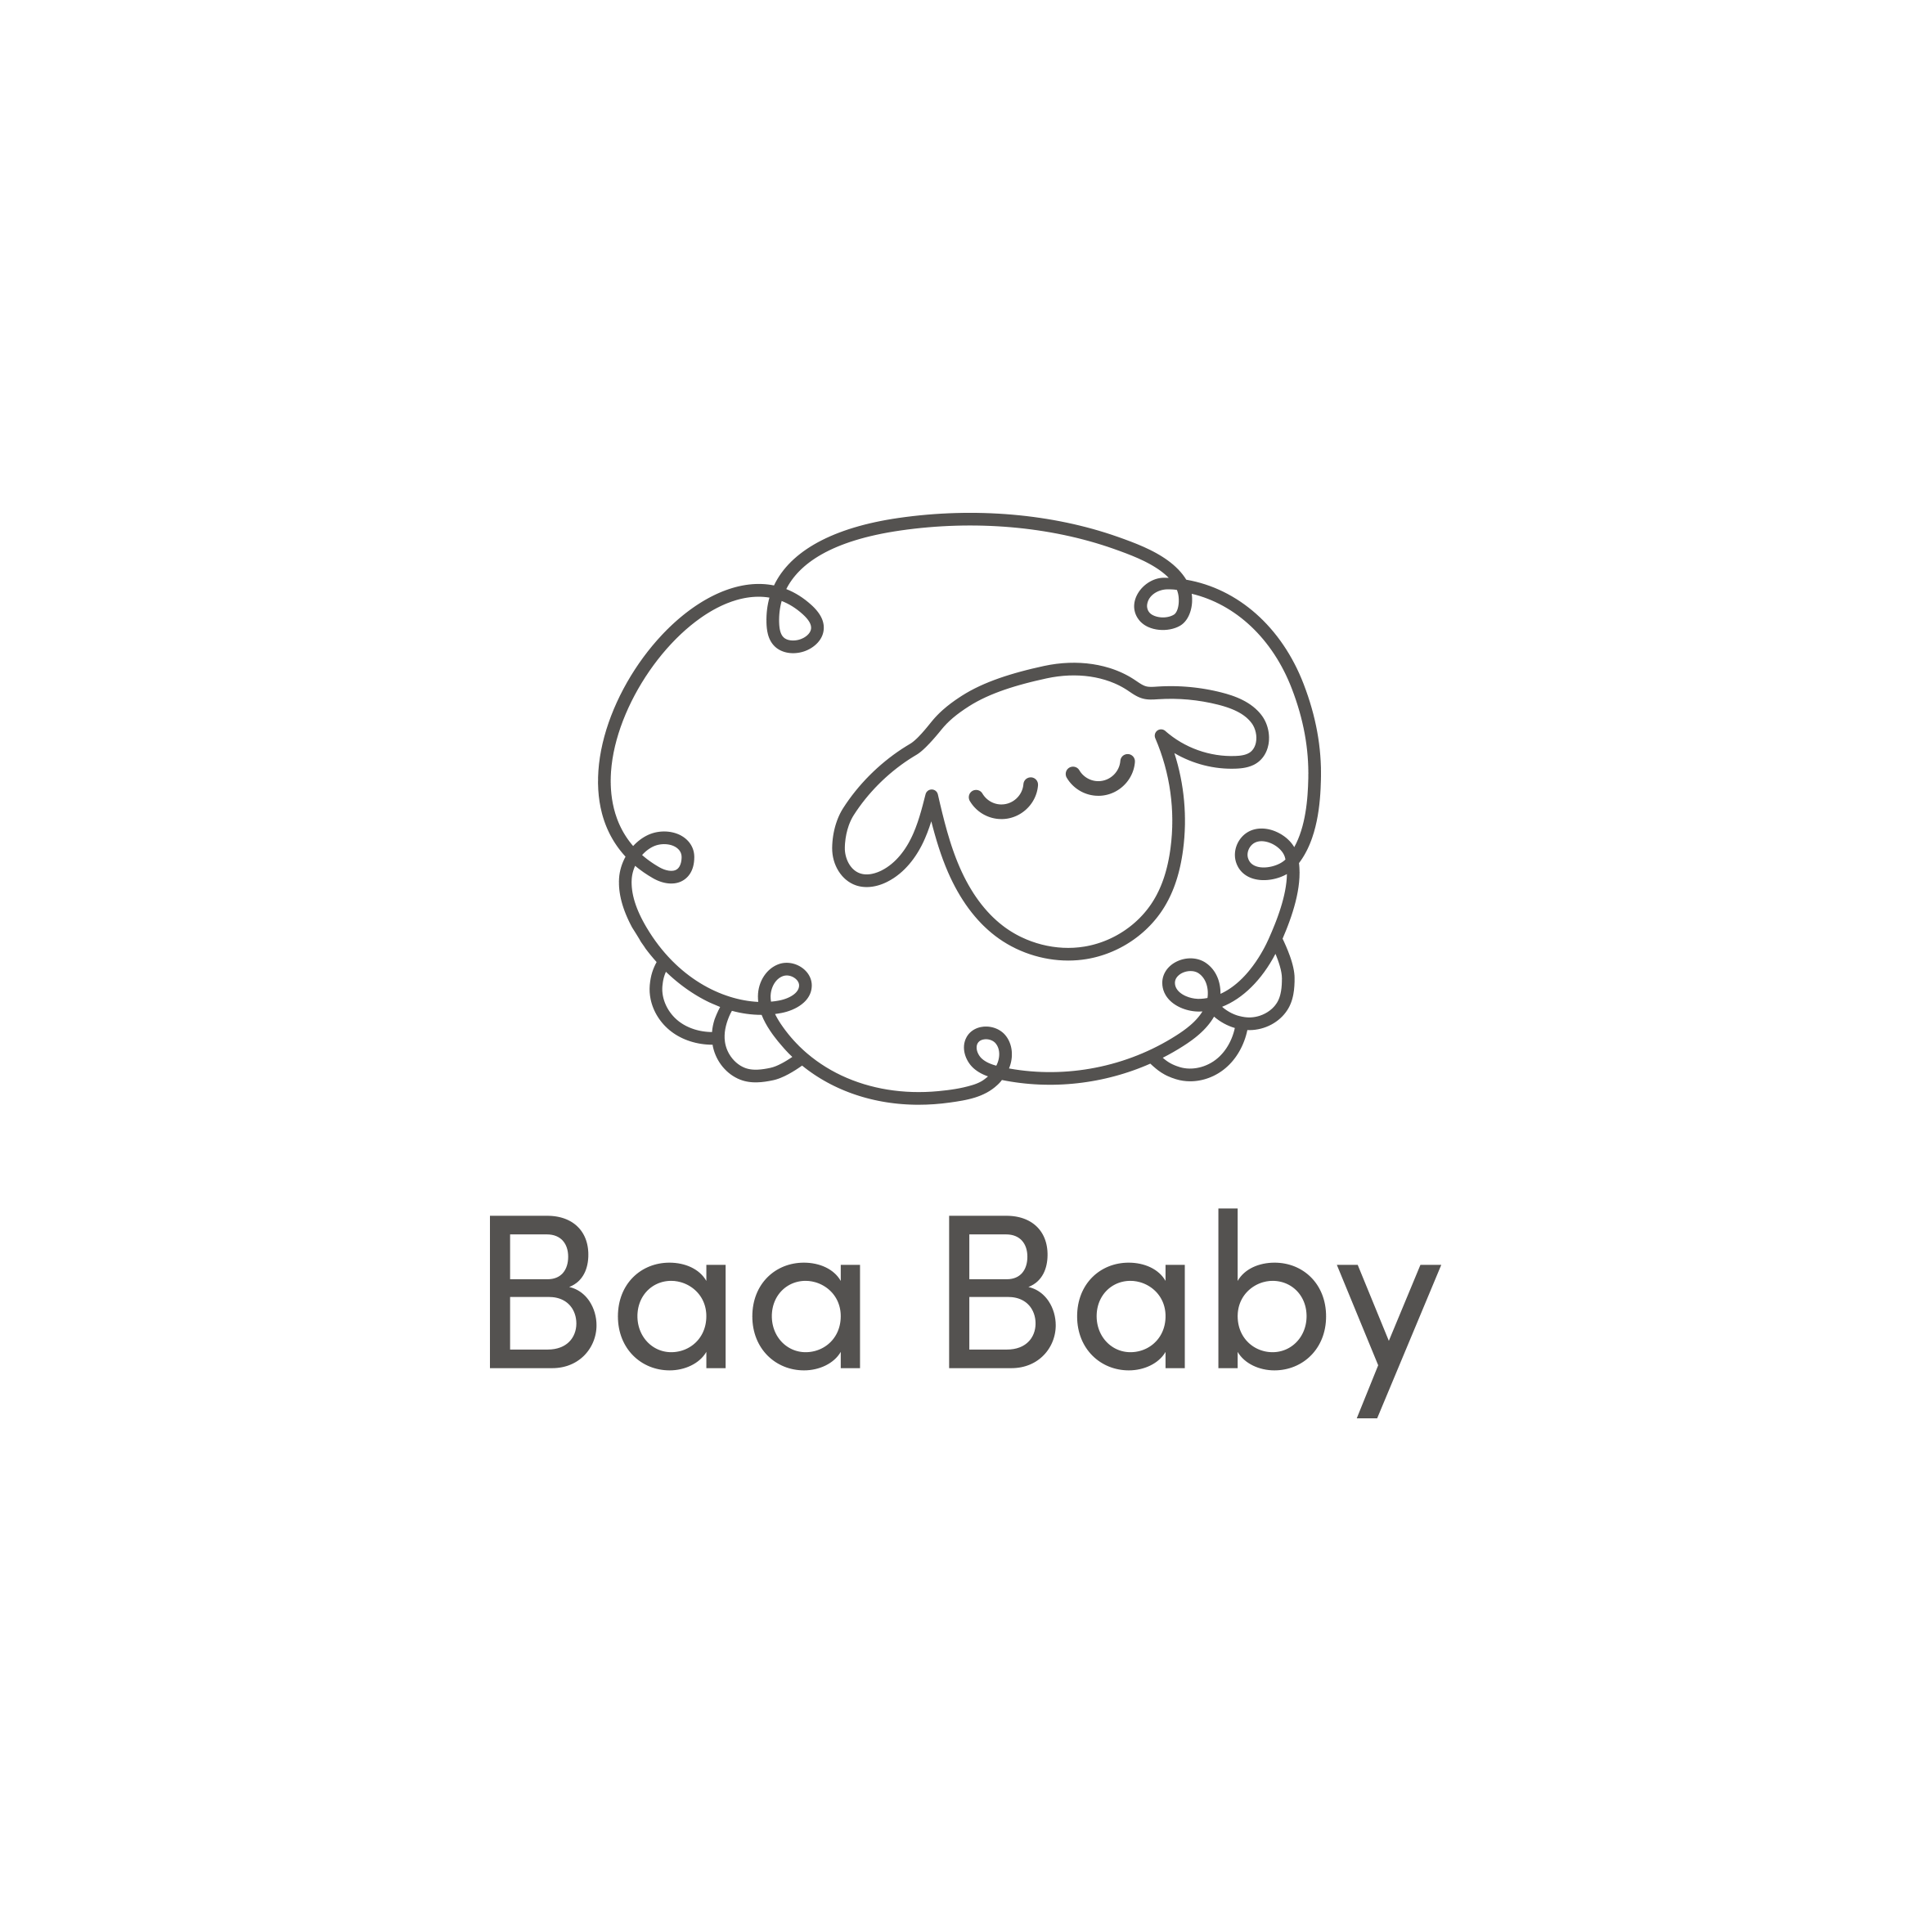 Baa Baby company logo